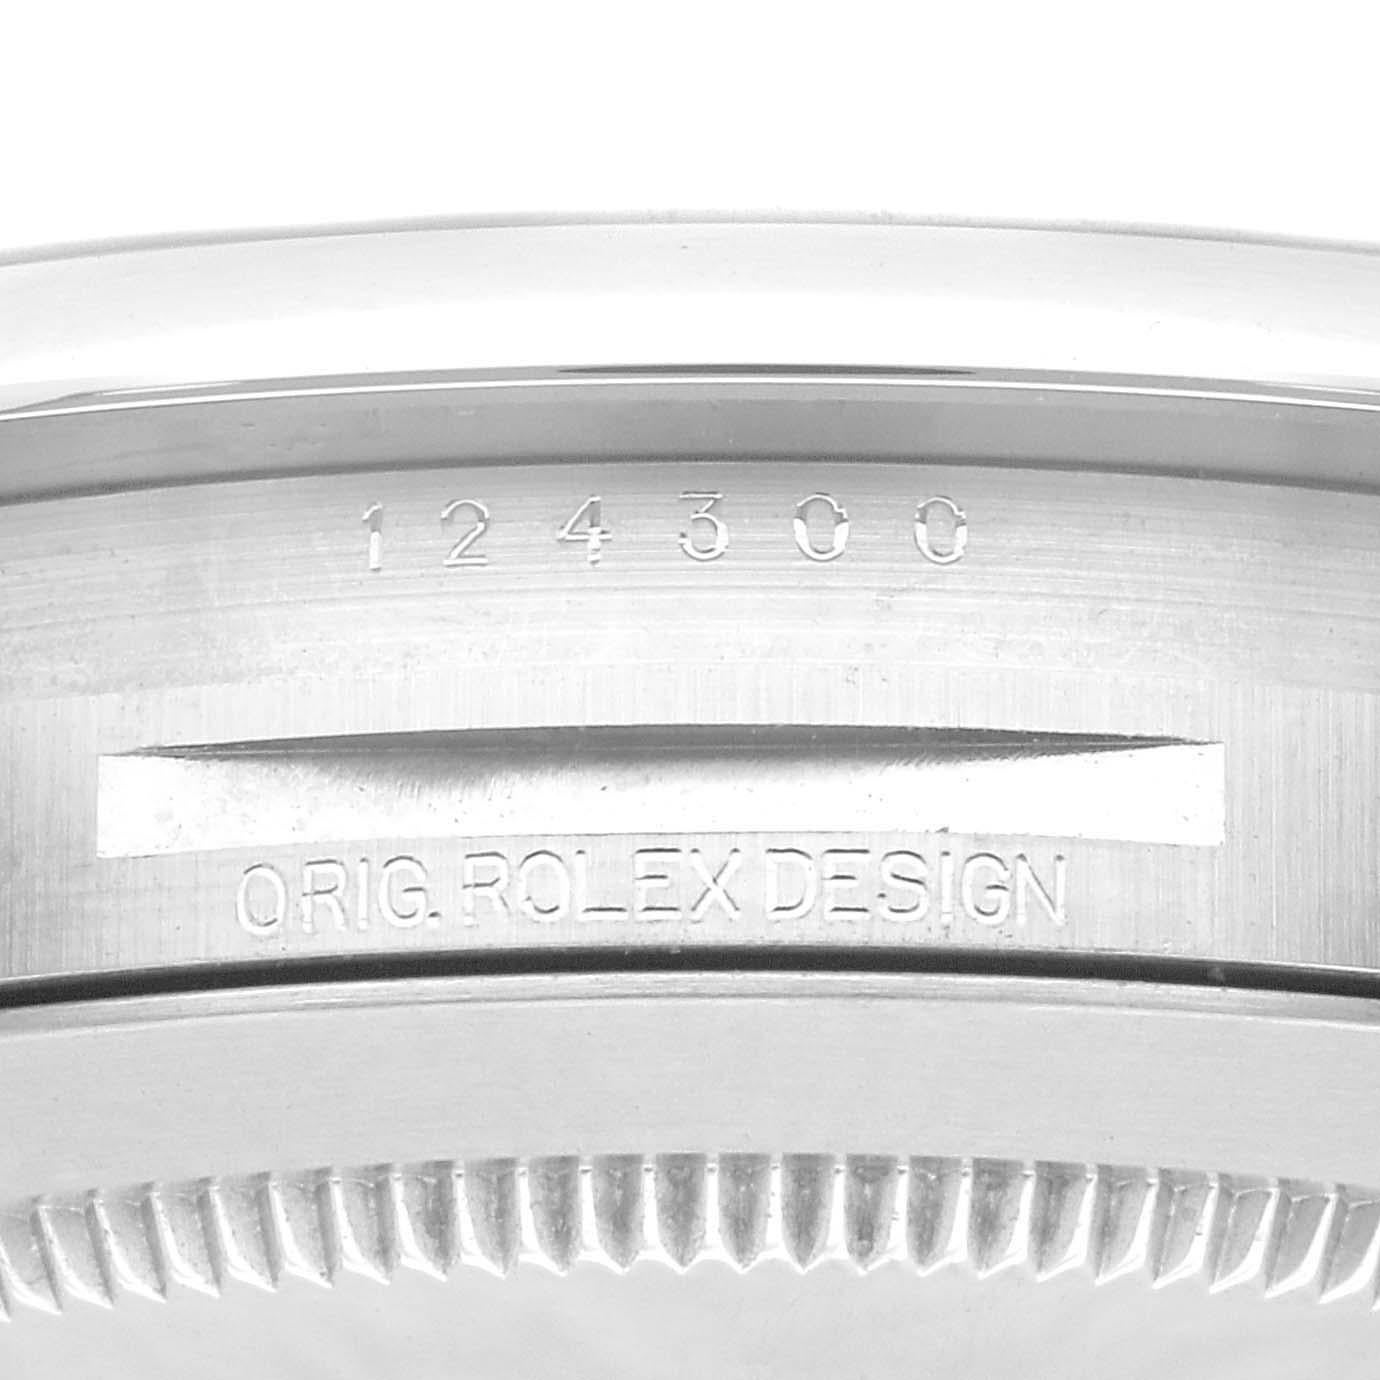 Rolex Oyster Perpetual 41mm blaues Zifferblatt Stahl Herrenuhr 124300 Box Karte. Offiziell zertifiziertes Chronometerwerk mit automatischem Aufzug. Gehäuse aus Edelstahl mit einem Durchmesser von 41 mm. Rolex Logo auf der Krone. Glatte, gewölbte